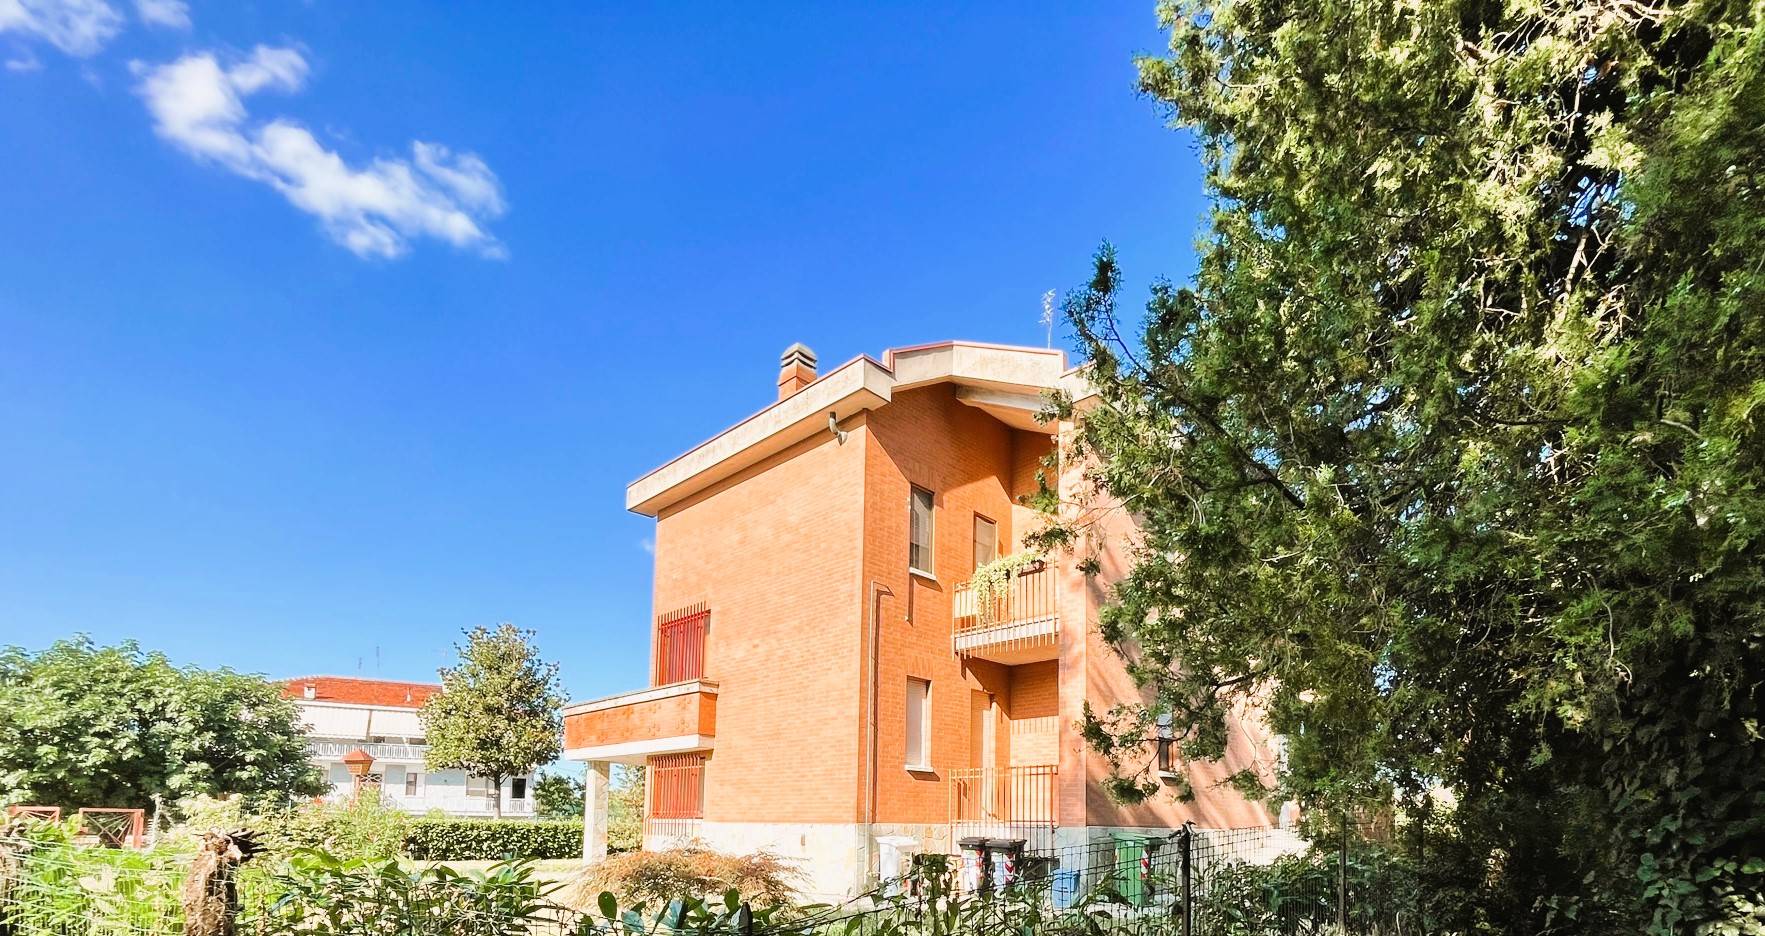 Villa Bifamiliare in vendita a Chieri, 8 locali, prezzo € 359.000 | PortaleAgenzieImmobiliari.it